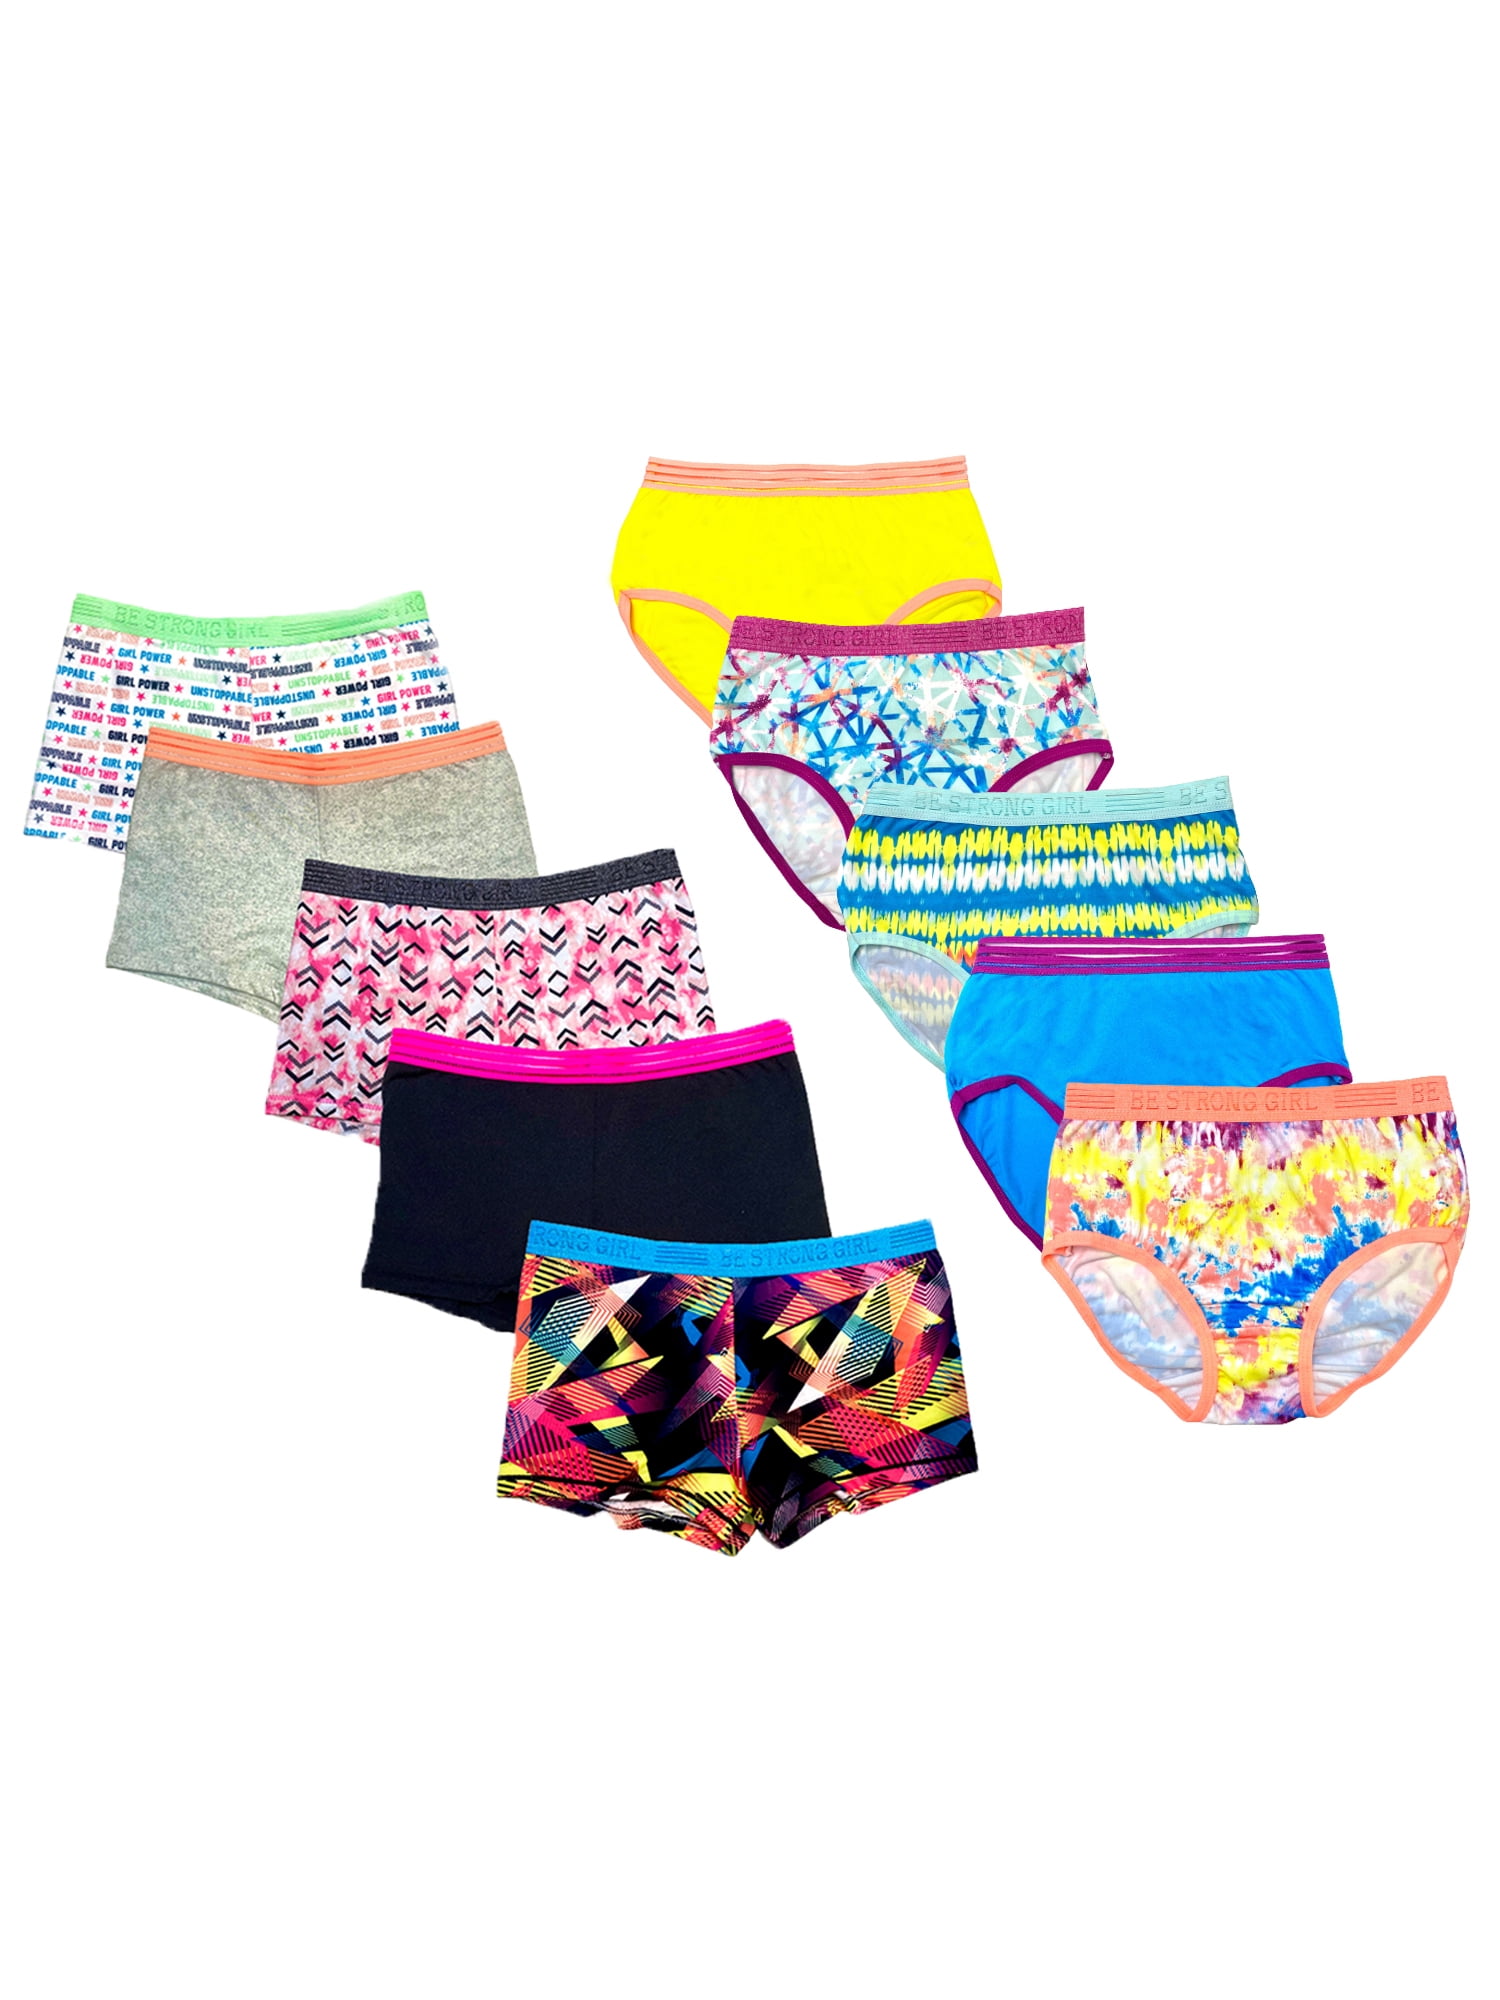 Athletic Works Girls' Underwear, 10-Pack Seamless Briefs (Little